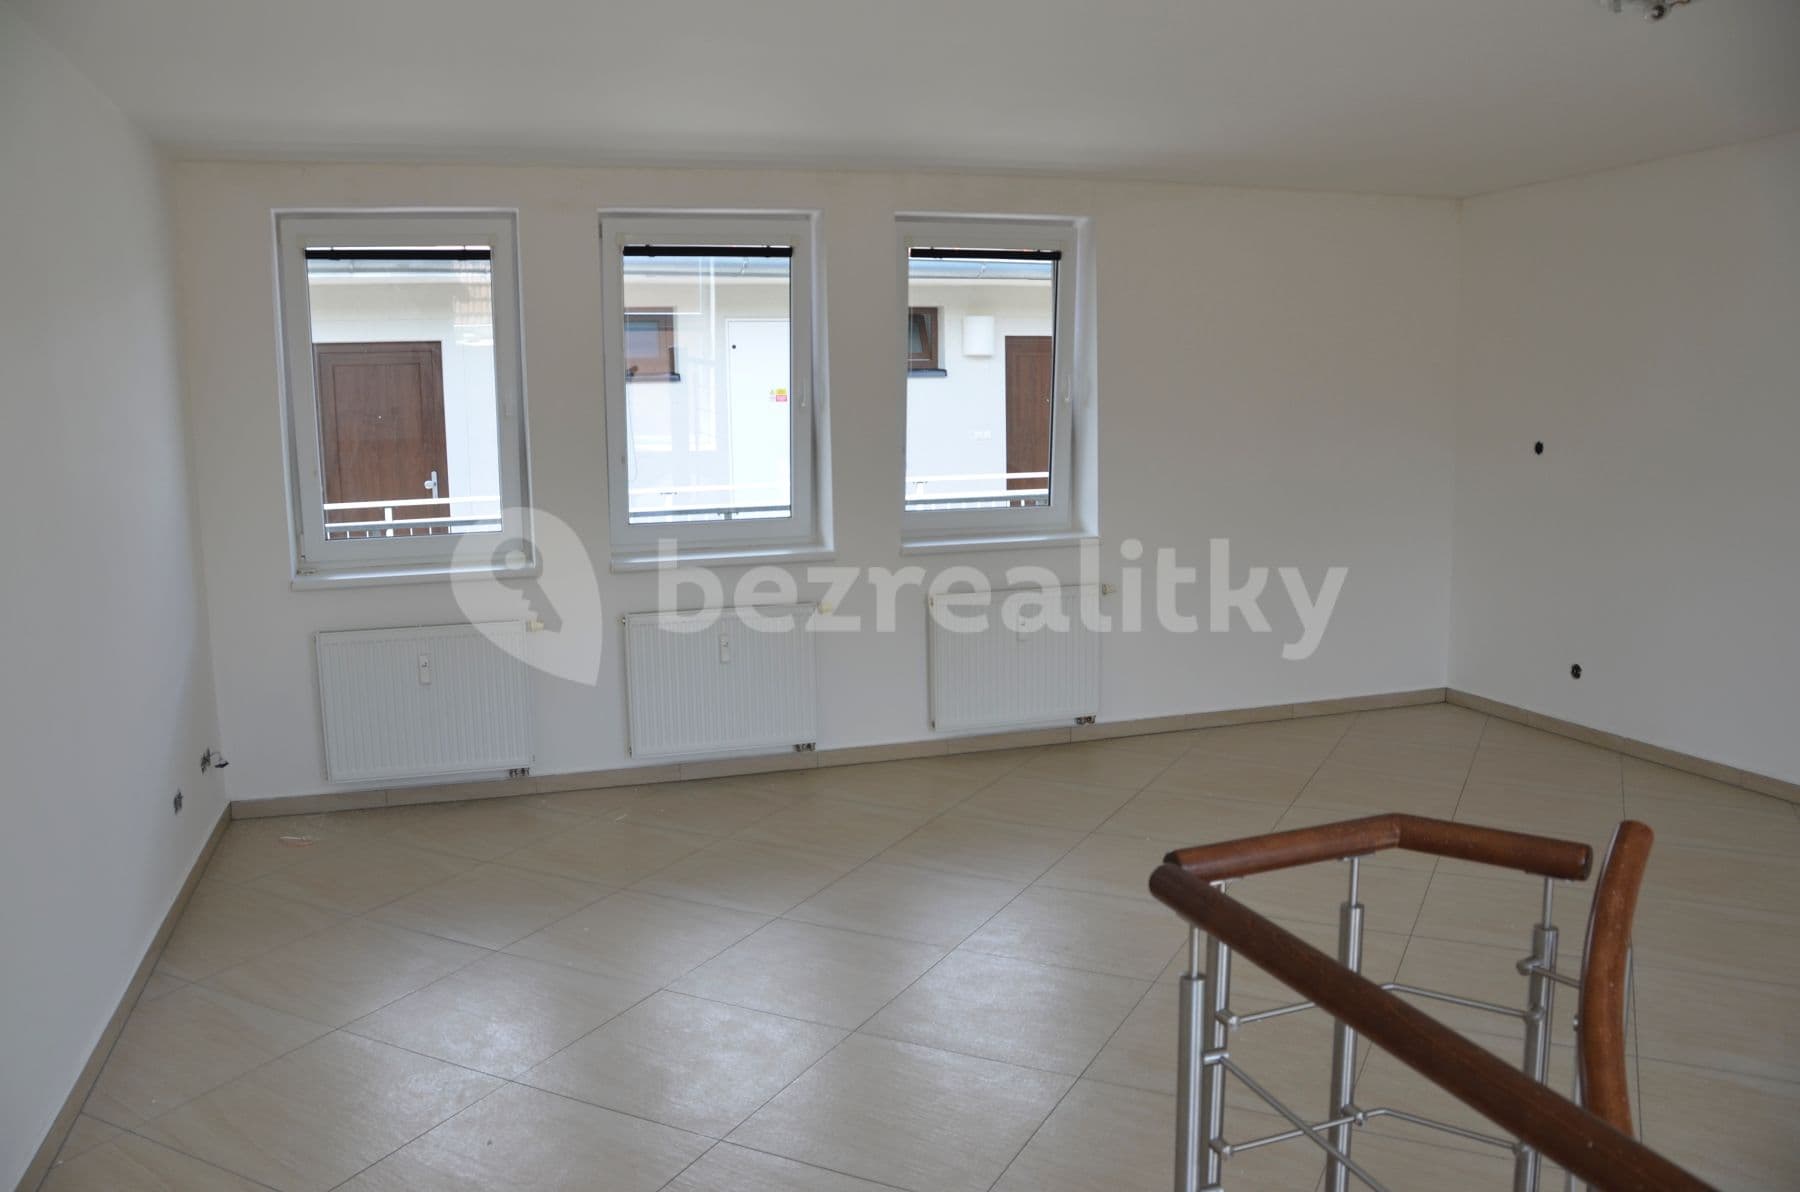 1 bedroom with open-plan kitchen flat to rent, 72 m², Svitavská, Brno, Jihomoravský Region